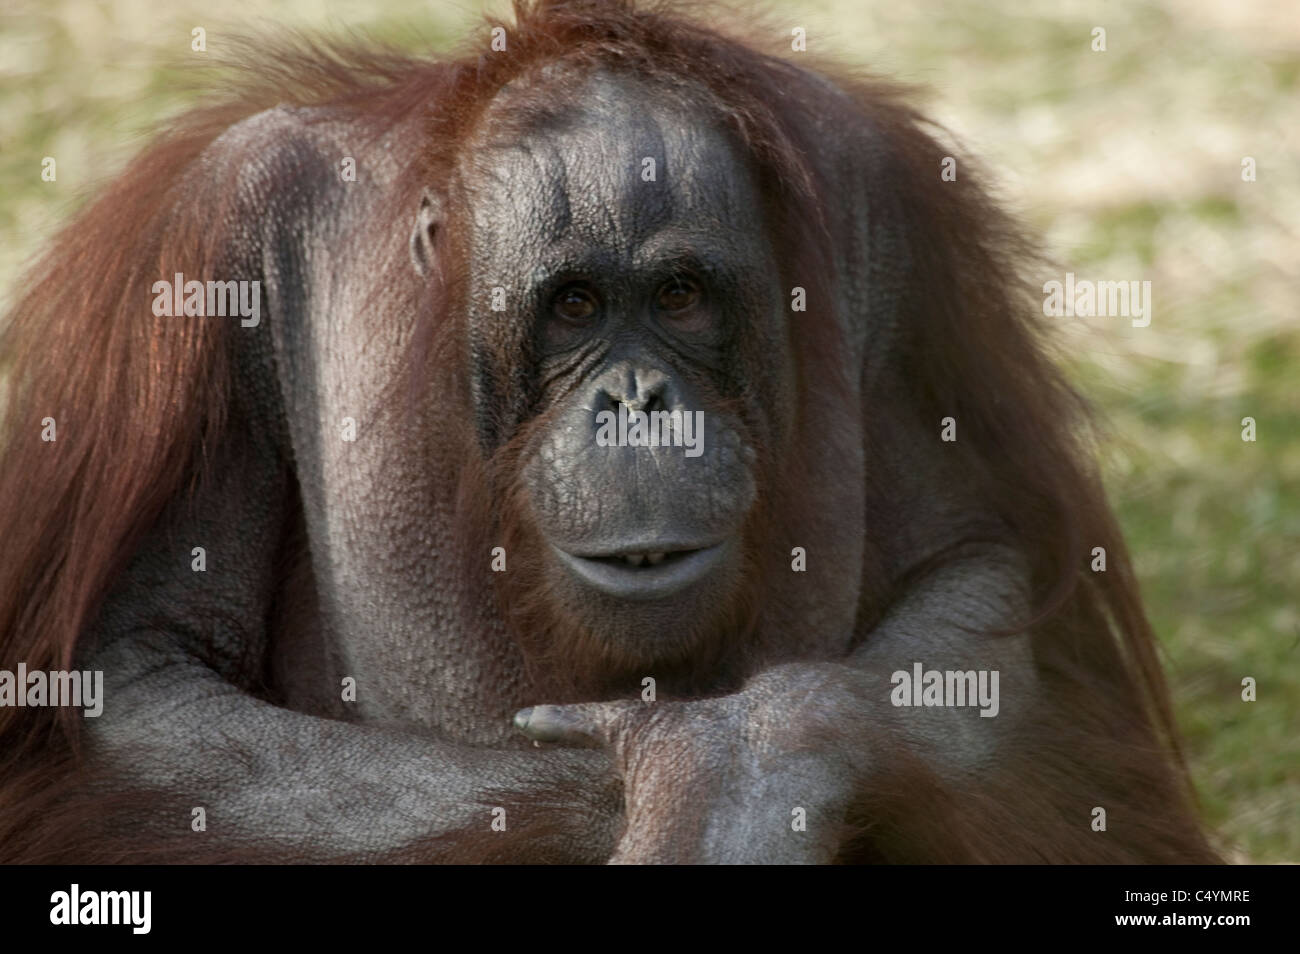 Bornean orangutan Pongo pygmaeus sitting on the grass arms folded and pouting Stock Photo